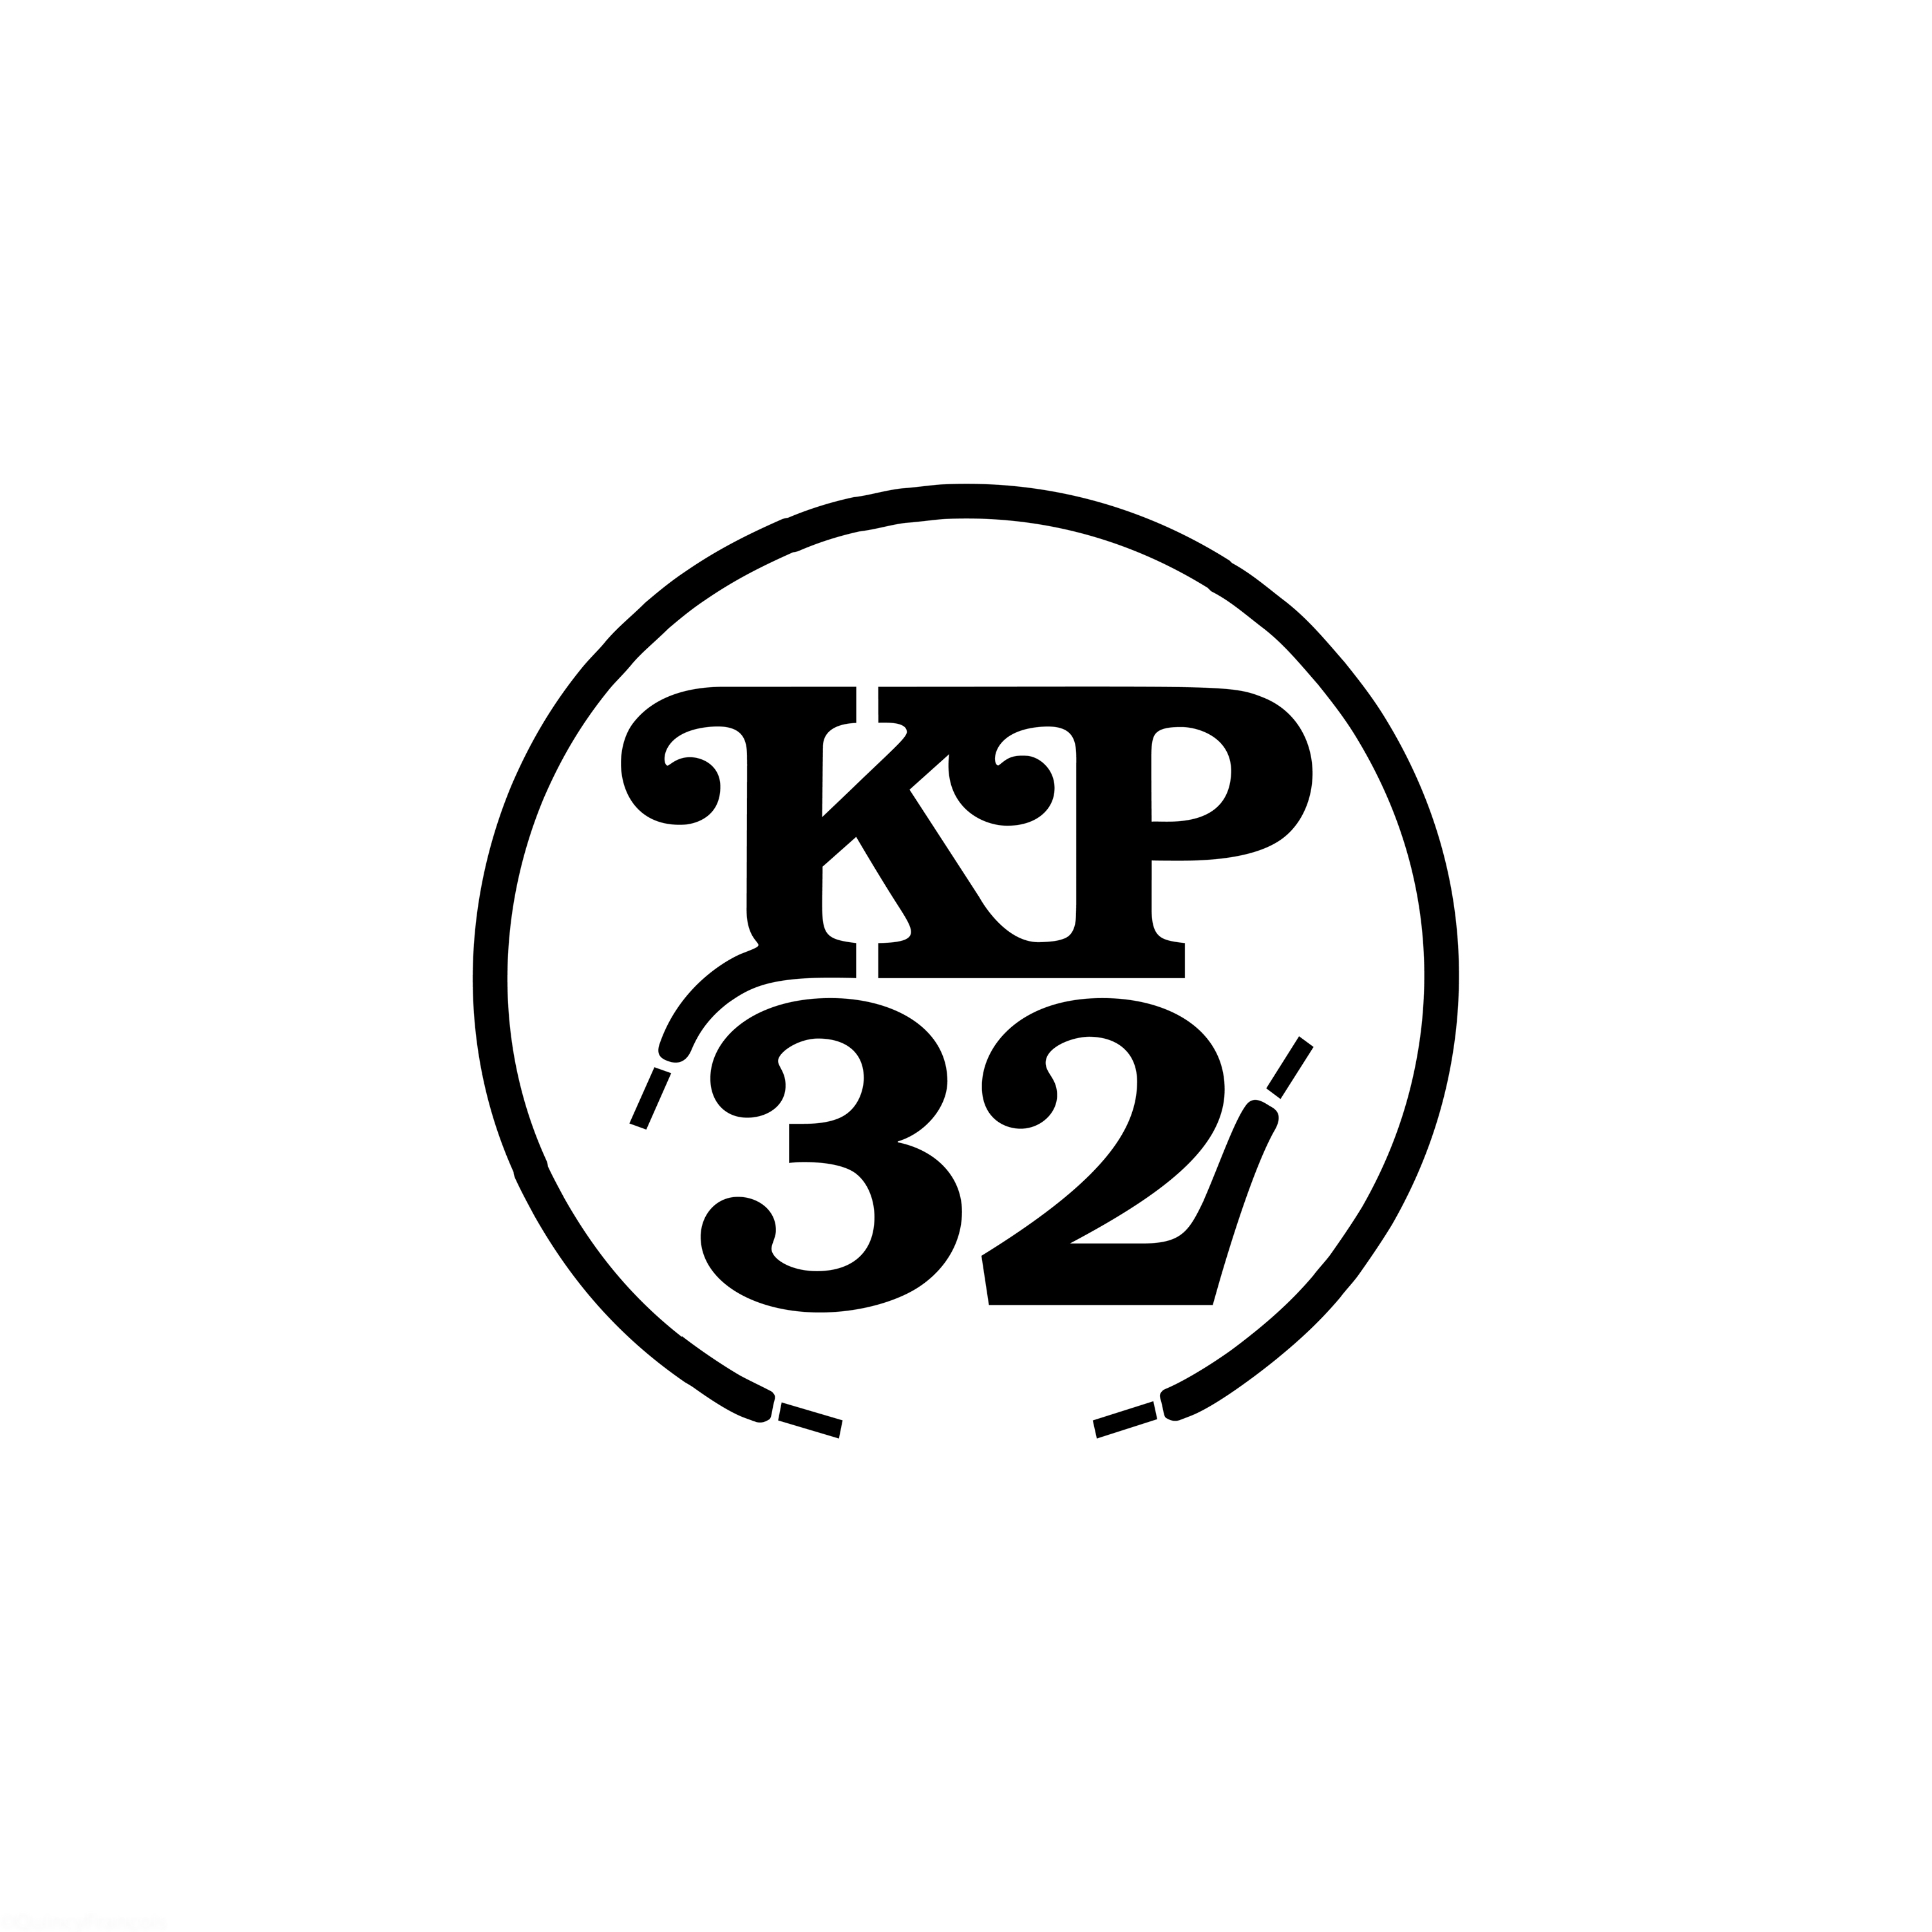 Project: Kickz Plus 32